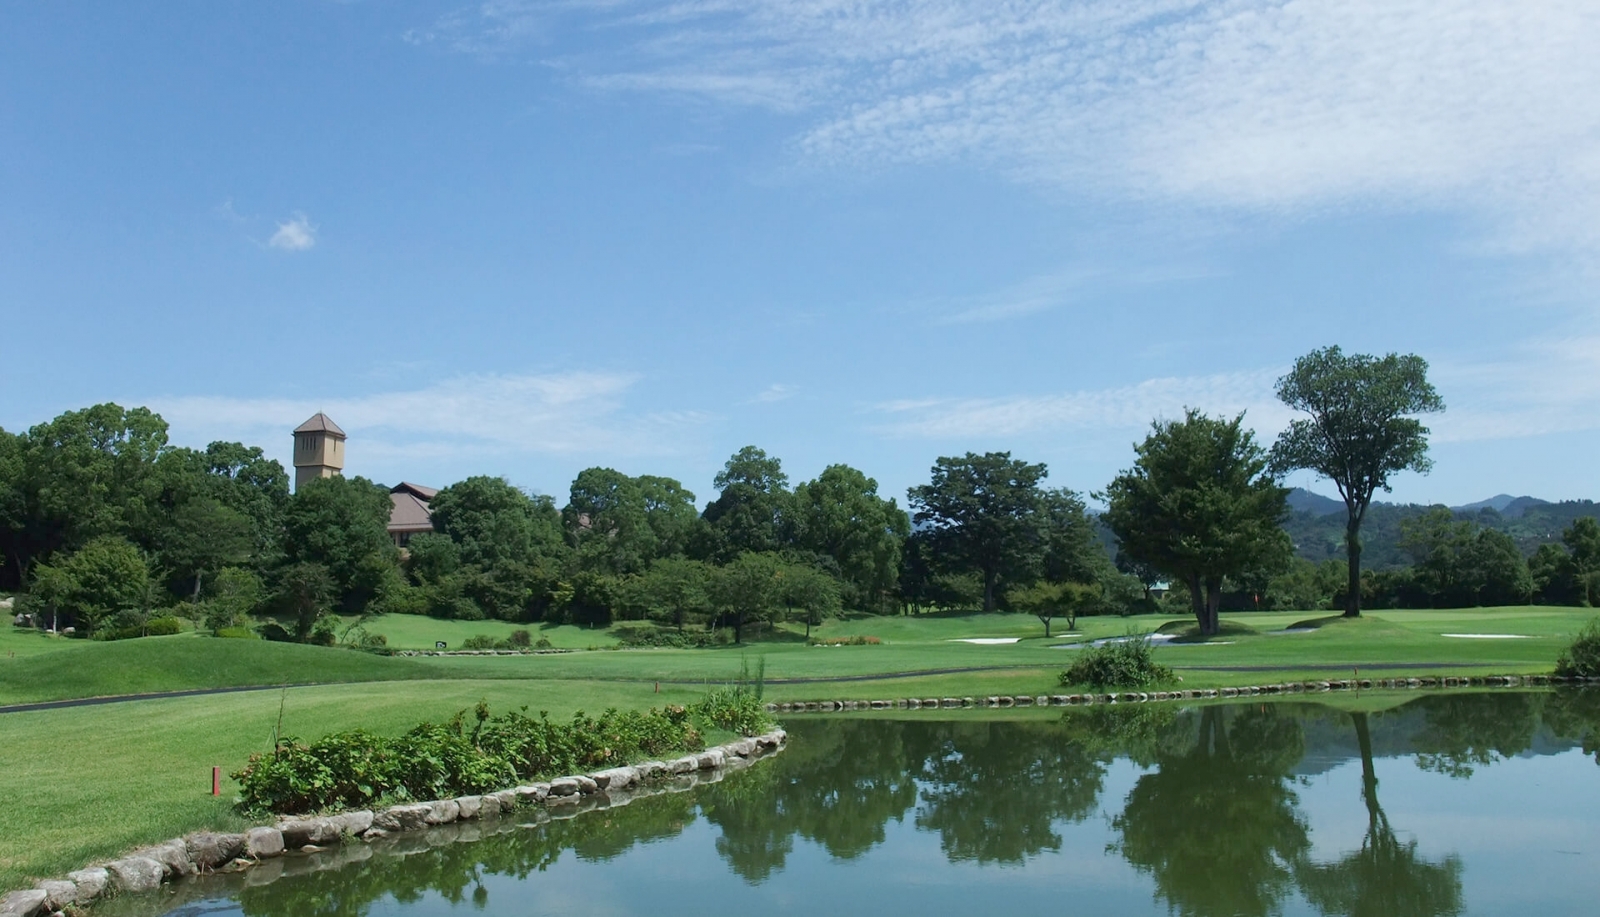 福岡世紀高爾夫俱樂部的難度以及球道美觀程度都在九州首屈一指，同時也是日本第一家引進Golface智慧球車軟體的高爾夫球場。